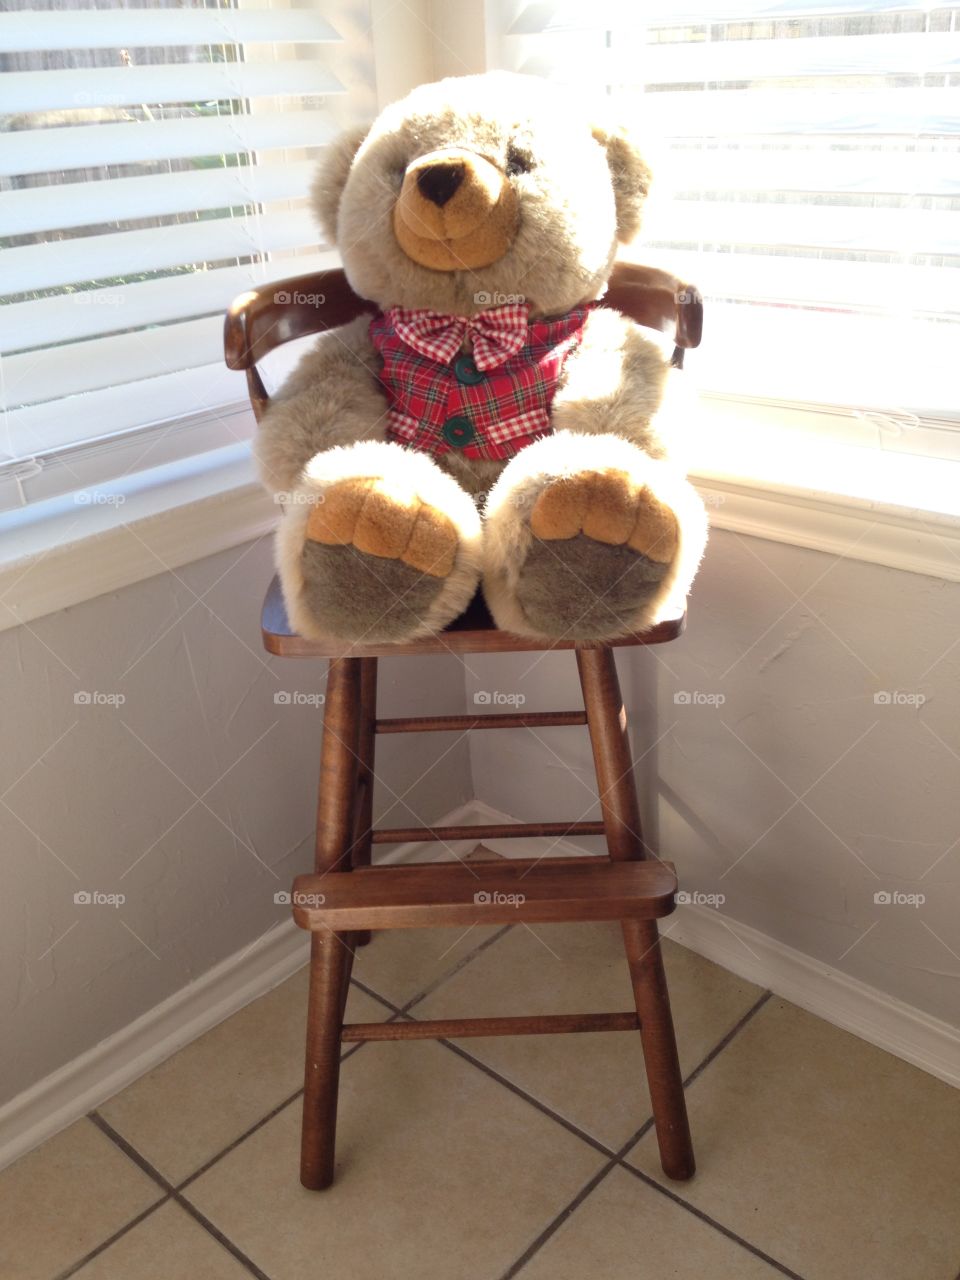 Stuffed bear in a chair